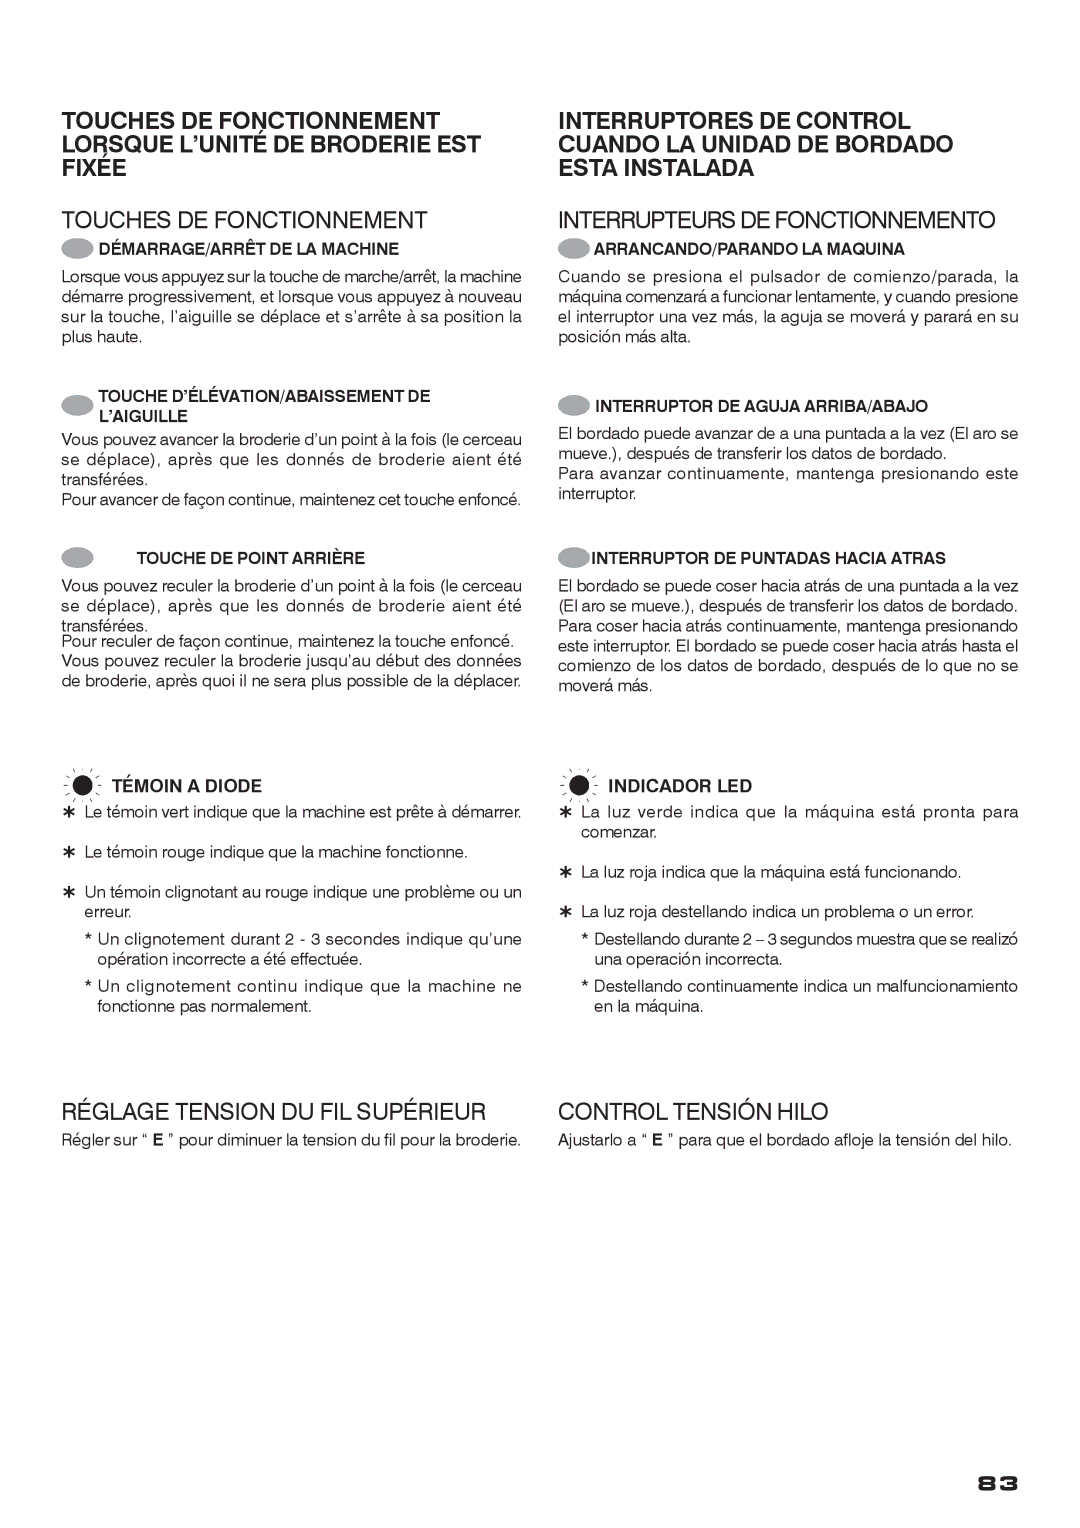 Singer CE-200 instruction manual Touches DE Fonctionnement, Interrupteurs DE Fonctionnemento 